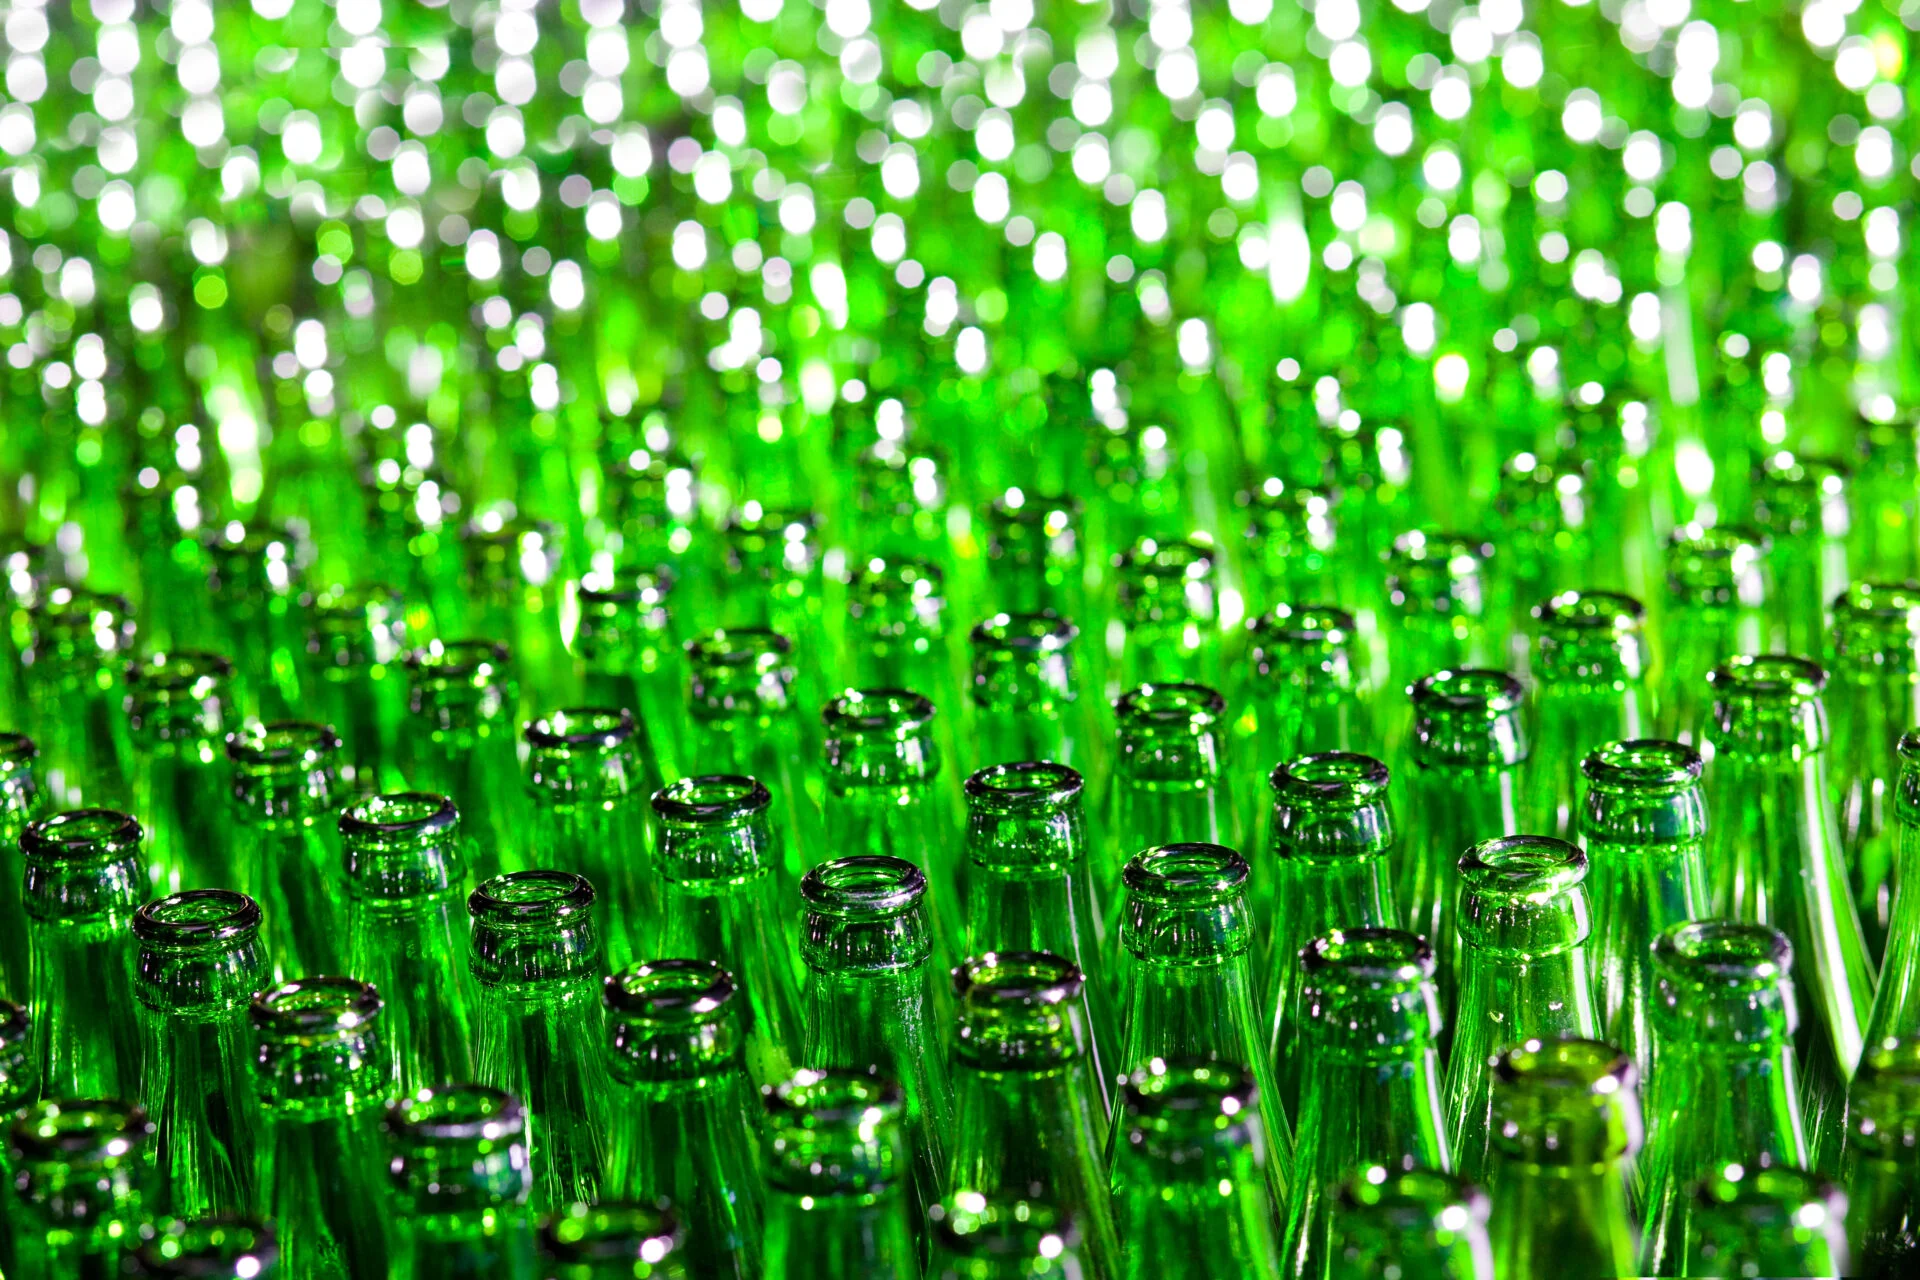 Bunch of green glass bottles